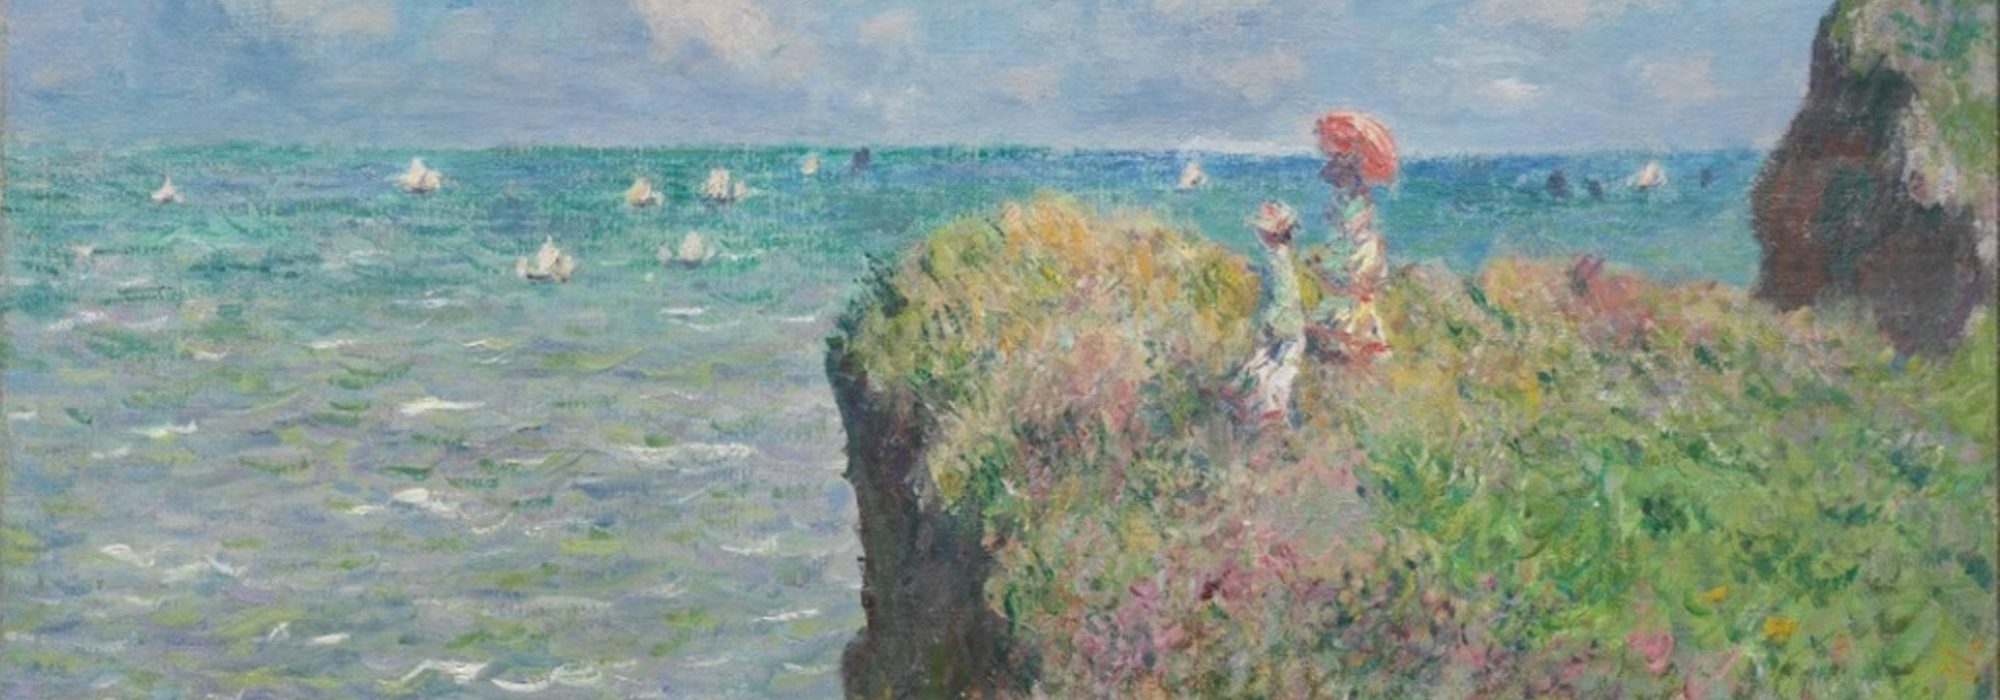 Imagem: Falésias de Pourville (Claude Monet, 1882)